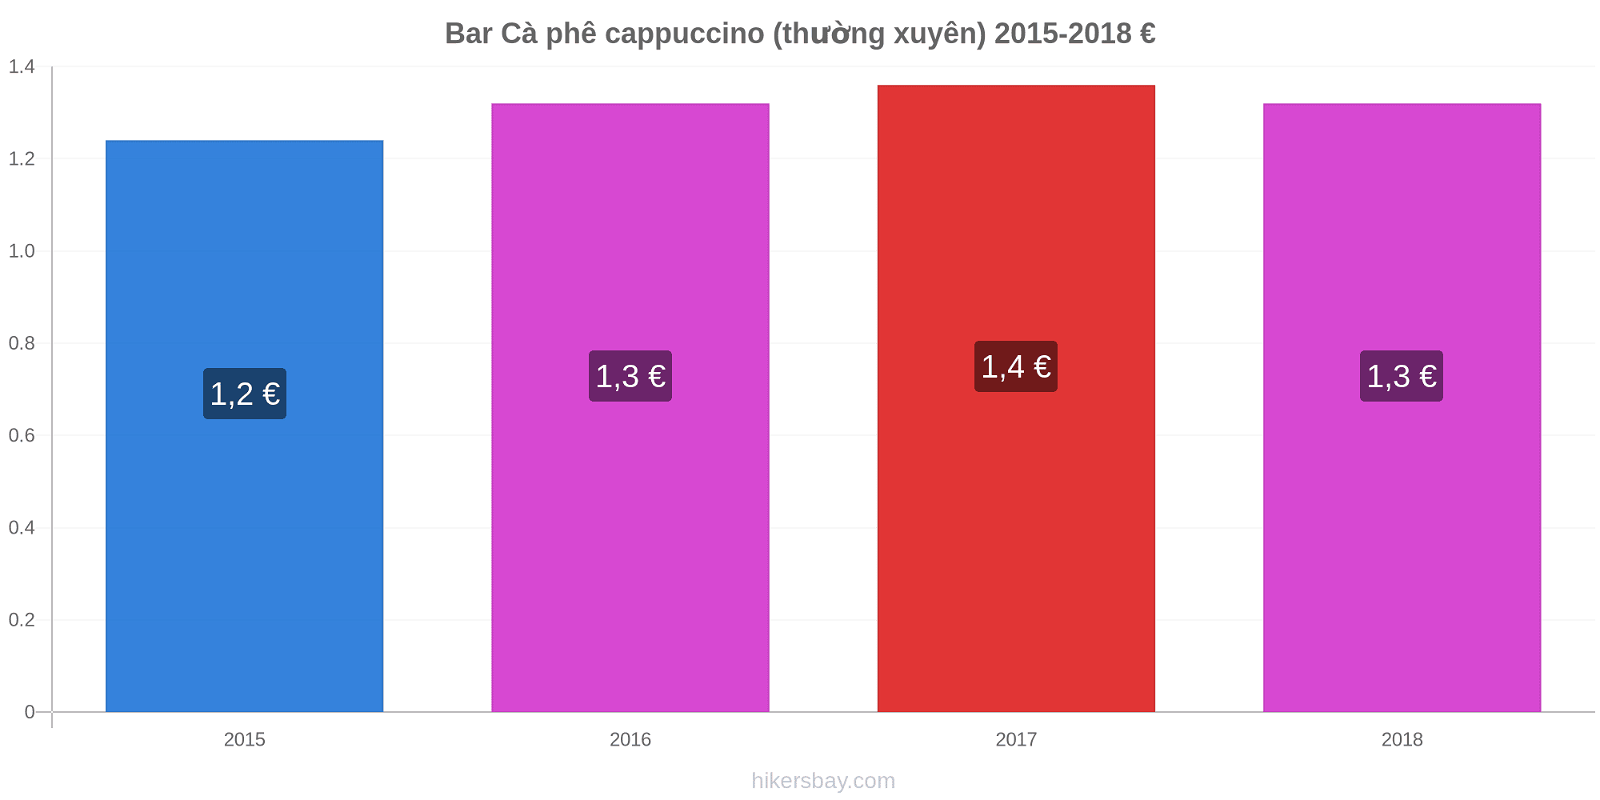 Bar thay đổi giá Cà phê cappuccino (thường xuyên) hikersbay.com